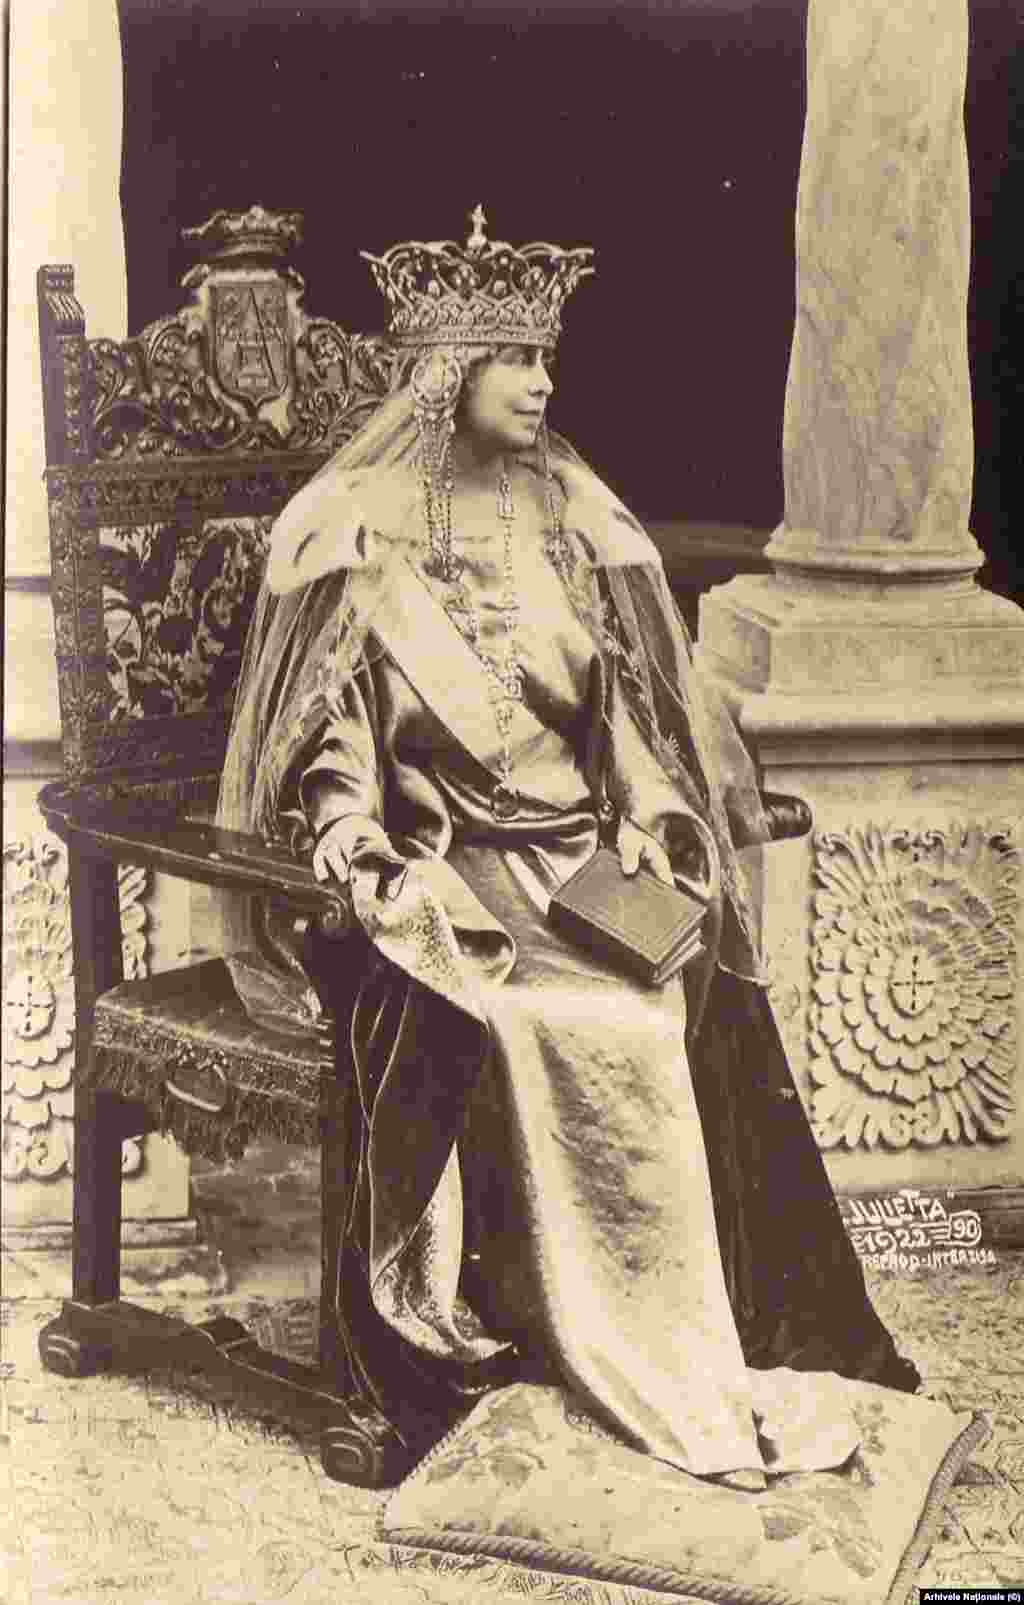 Regina Maria, în costumul de mare ceremonie de la Încoronarea alături de Regele Ferdinand, ca suverani ai României Unite, 15 octombrie 1922. Ferdinand a devenit rege în vreme de război, după moartea regelui Carol I, în septembrie 1914. Prin urmare, cuplul regal nu avusese o ceremonie de înscăunare. Înocronarea a fost cea mai mare sărbătoare a epocii din întreaga Europă Centrală și de Est, cu invitați de prestigiu din întreaga lume. În România, serbările publice au ținut vreme de trei zile.&nbsp;